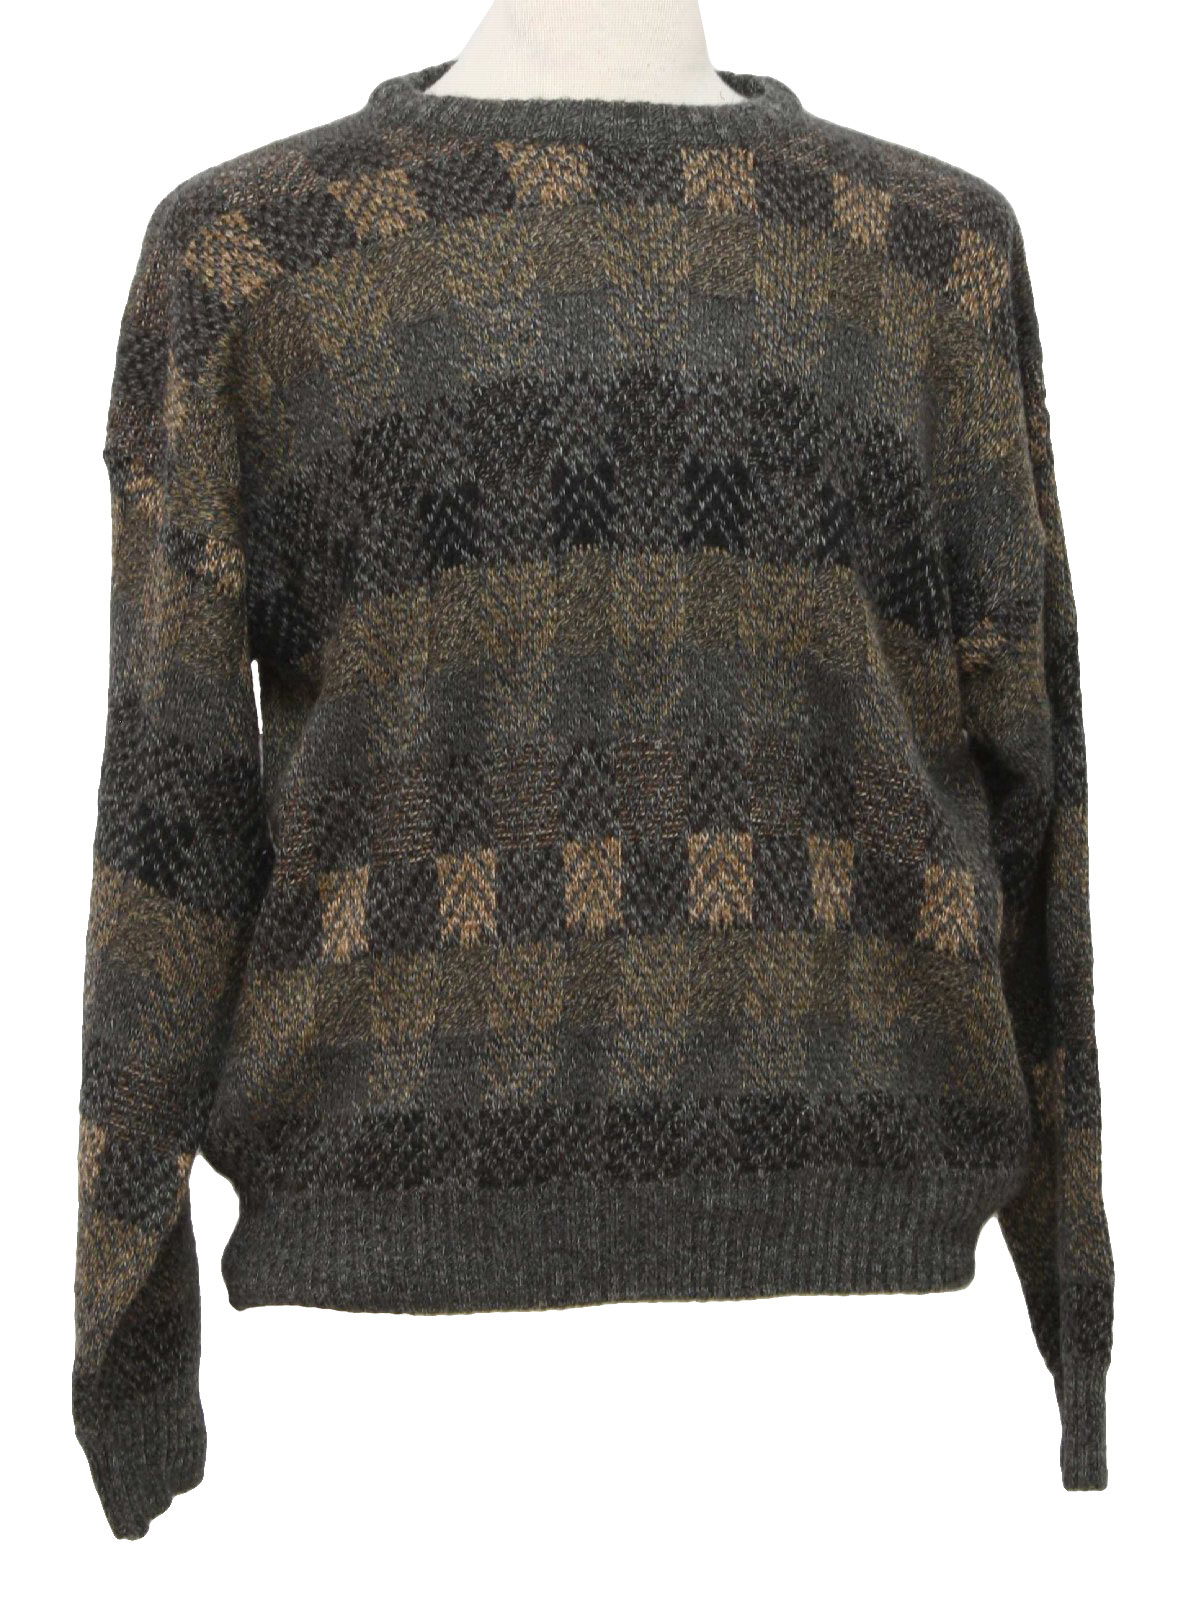 Towncraft Eighties Vintage Sweater: 80s -Towncraft- Mens grey, tan ...